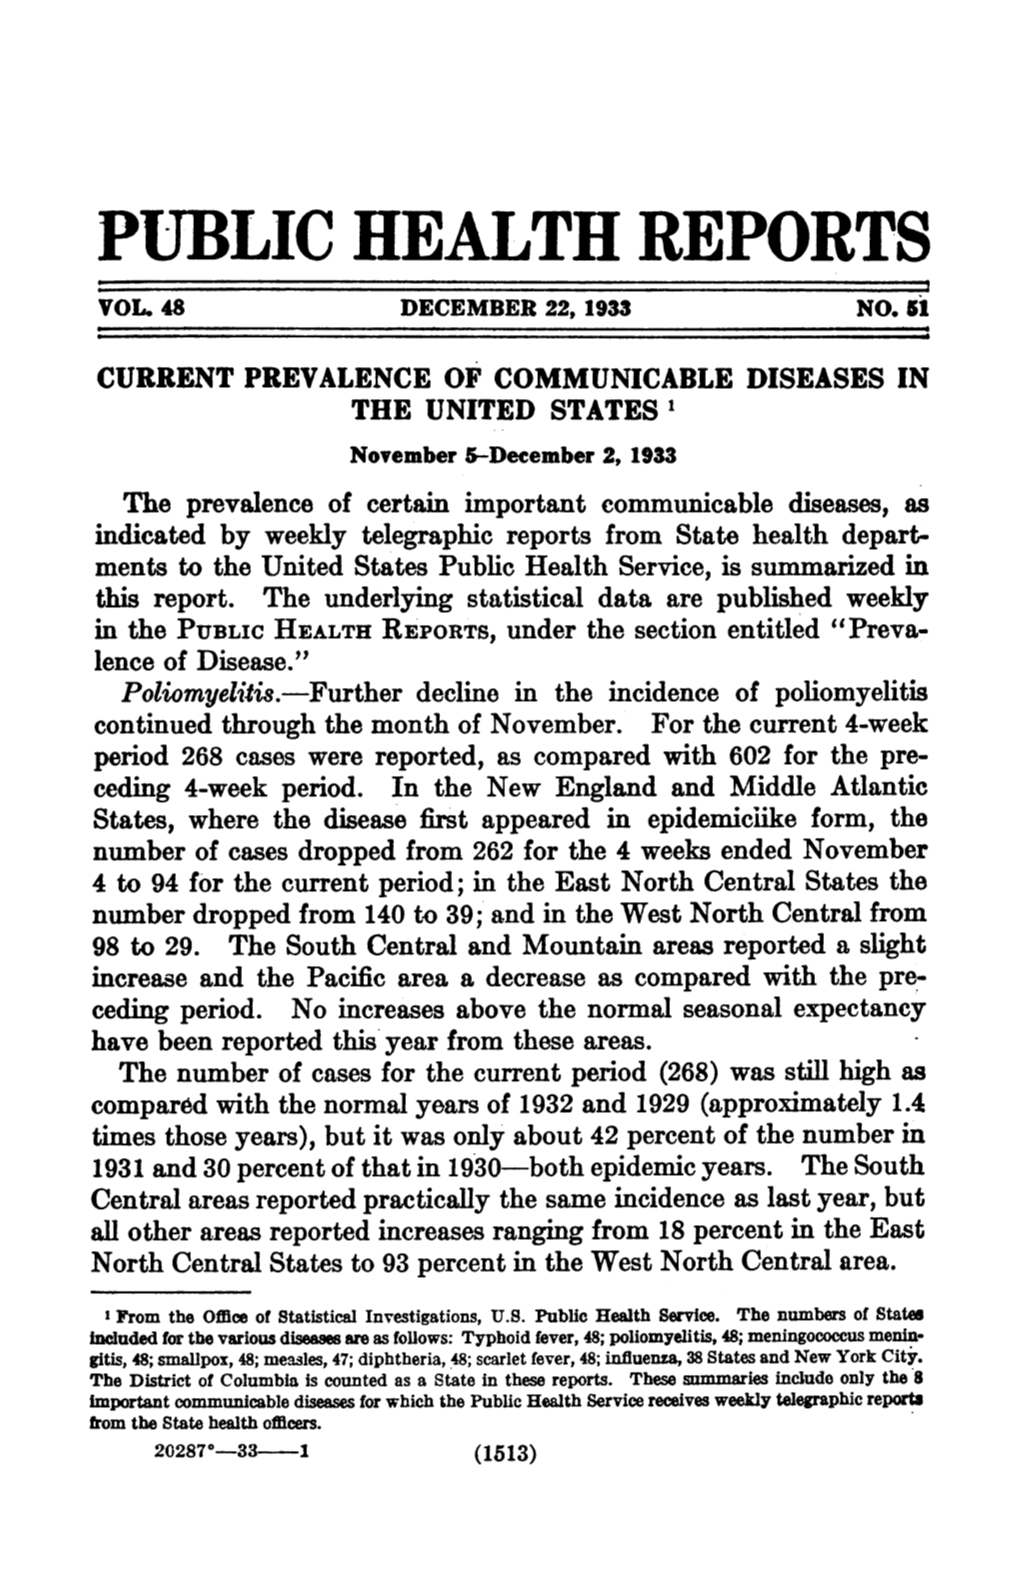 Public Health Reports Vol 48 December 22, 1933 No